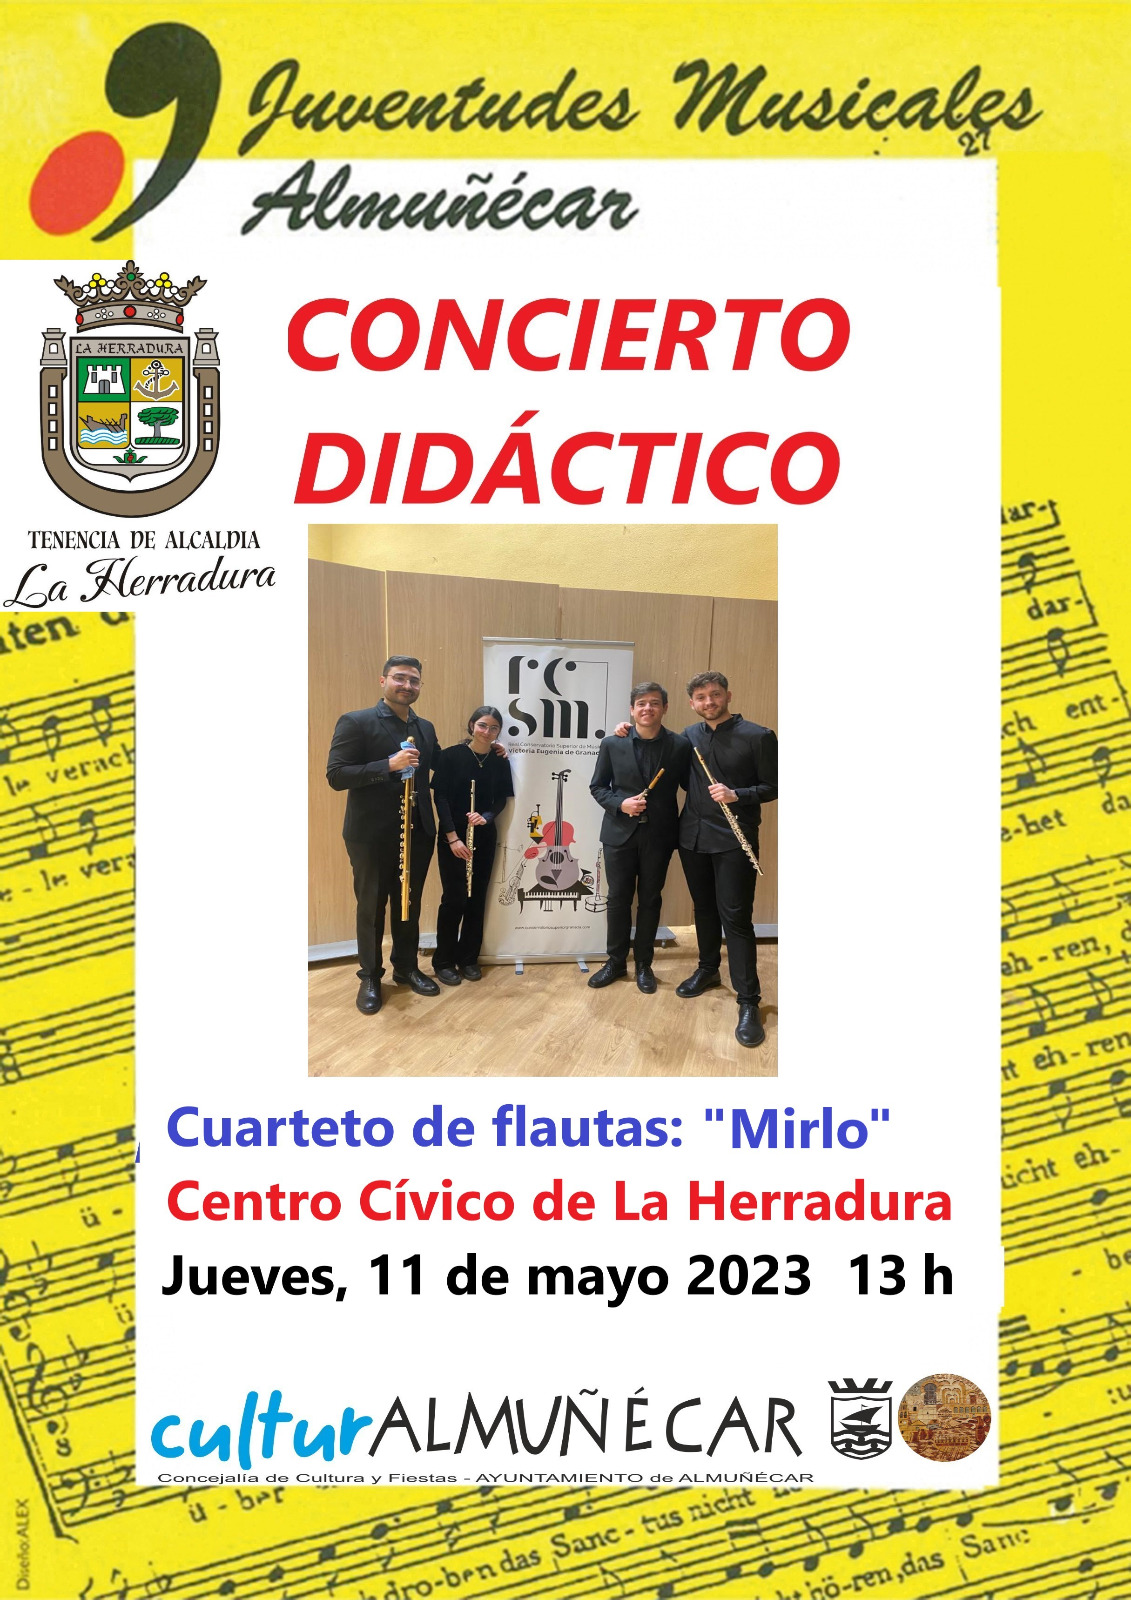 Doble concierto de Juventudes Musicales el 11 y 12 de mayo